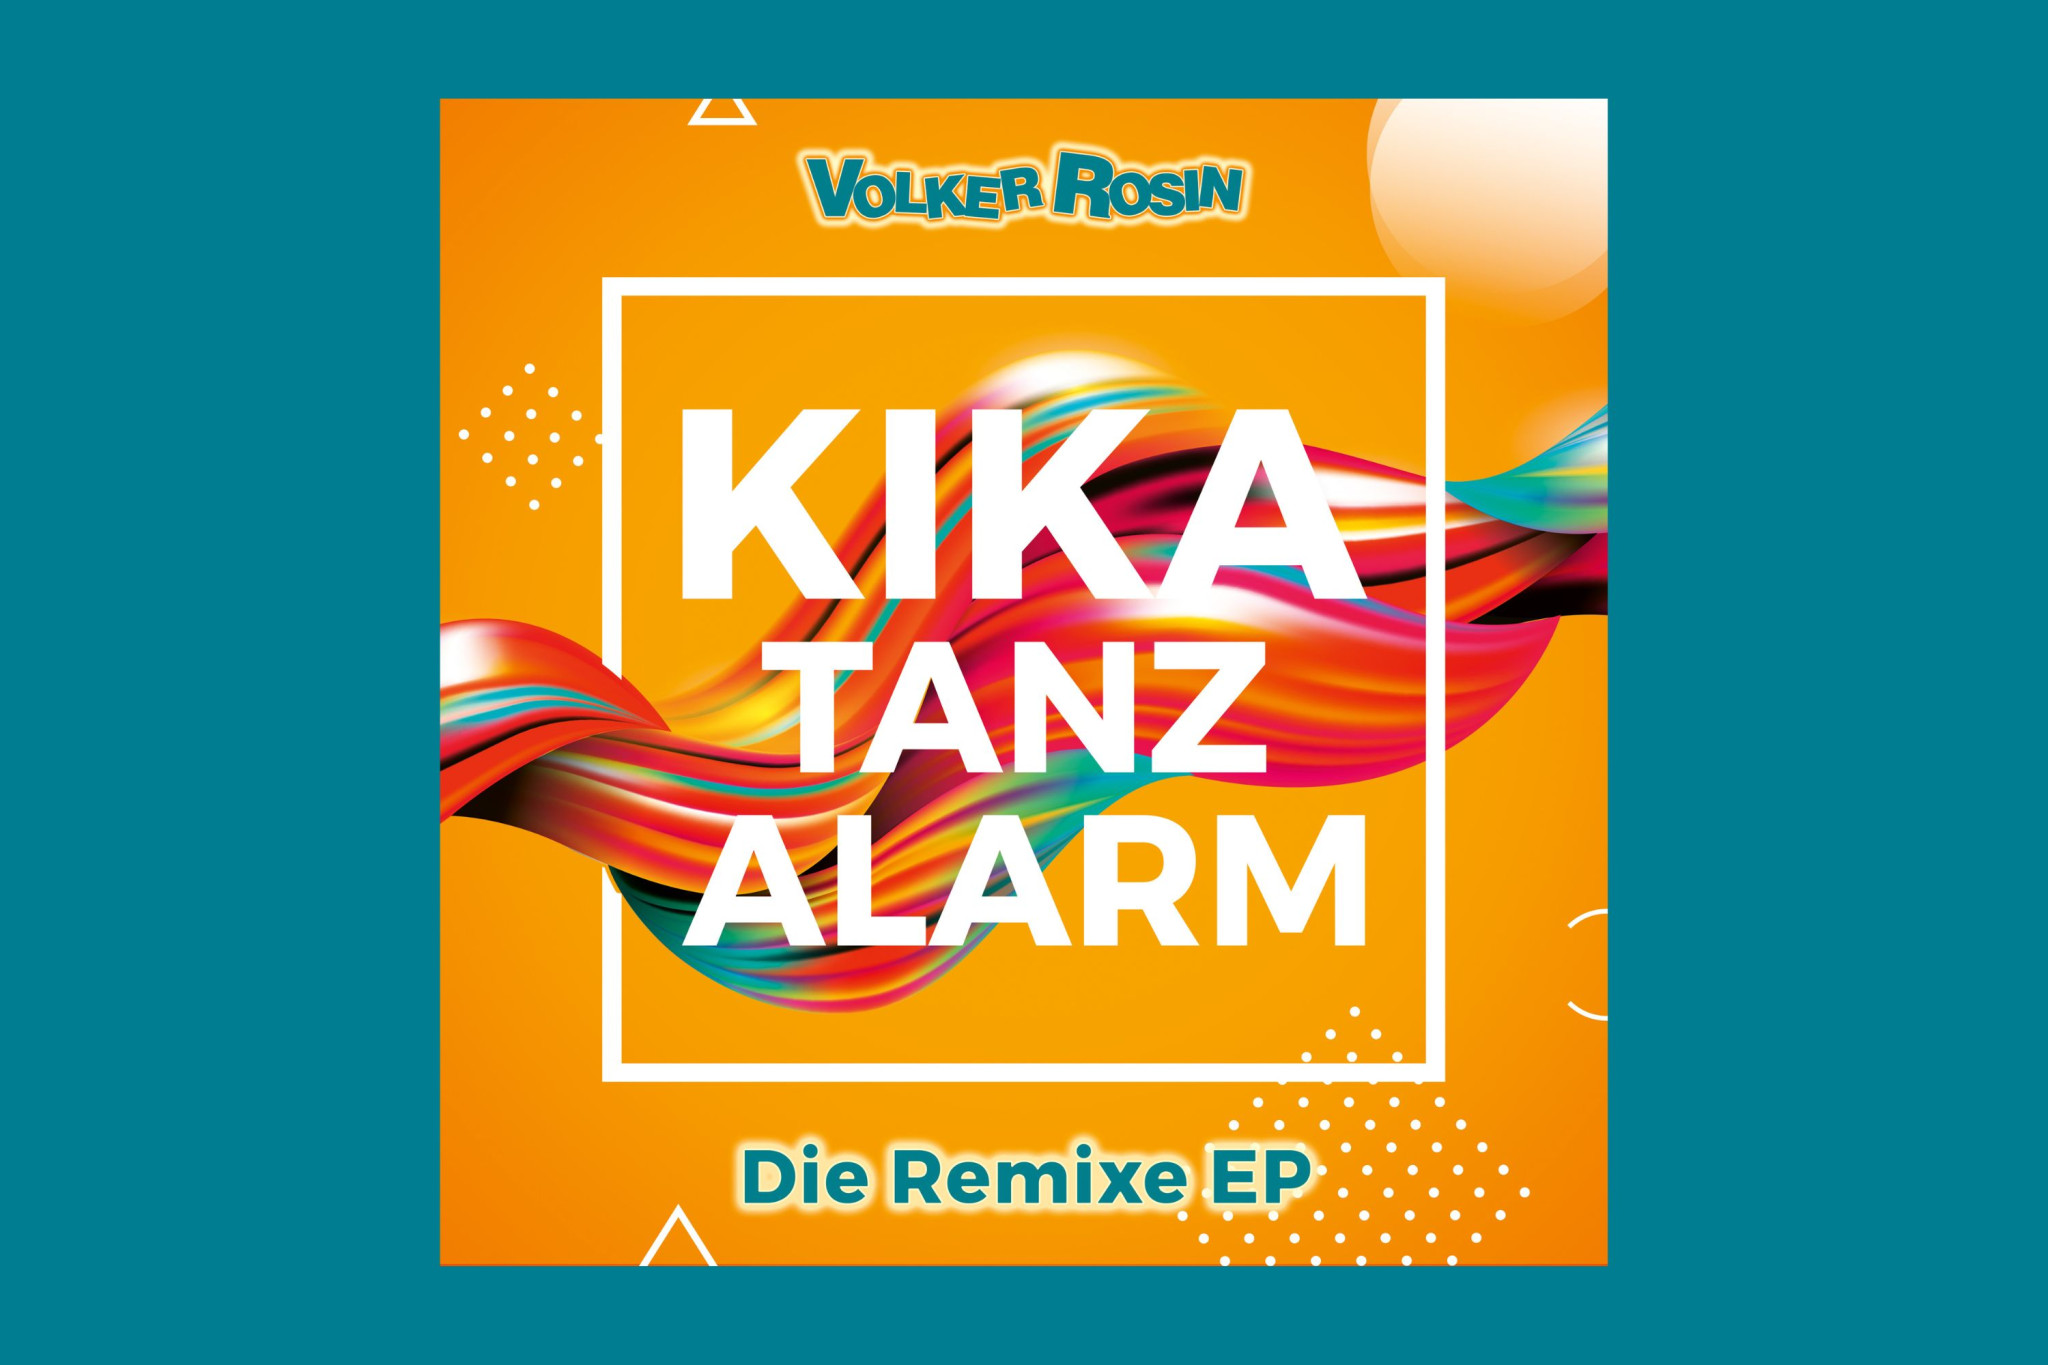 Volker Rosin veröffentlicht sechs Remixe seines Hits "Kika Tanzalarm" 